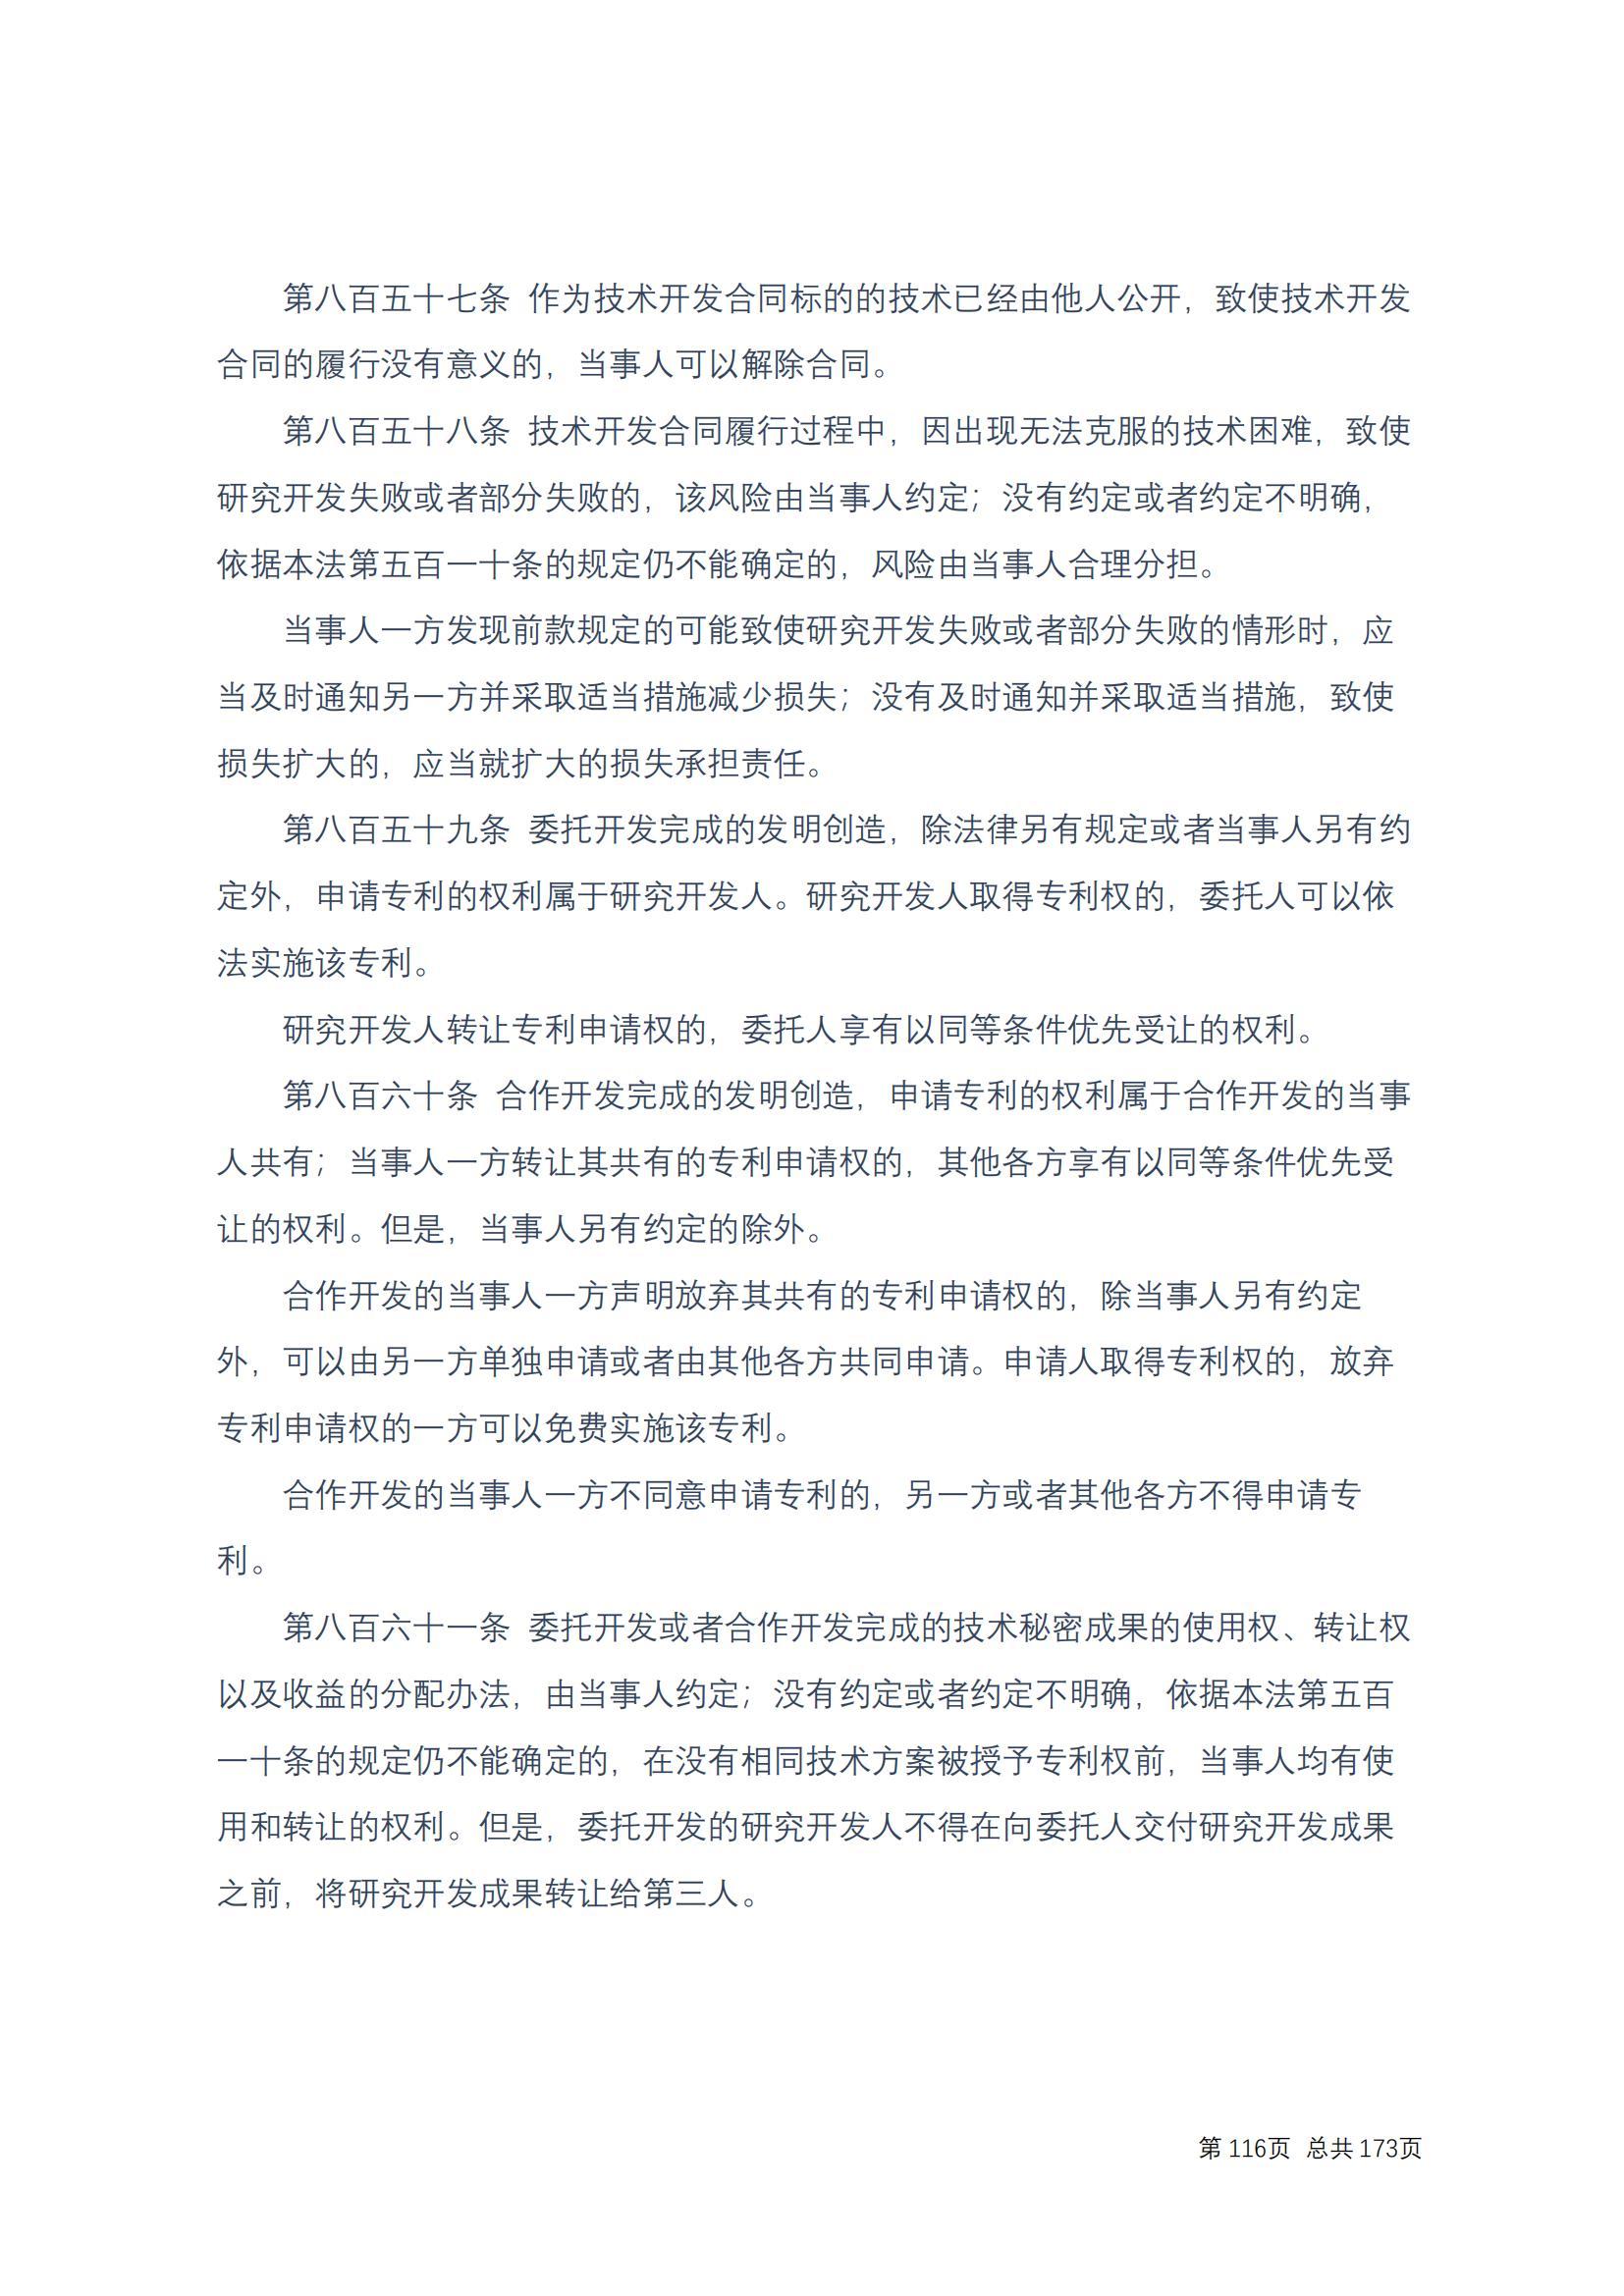 中华人民共和国民法典 修改过_115